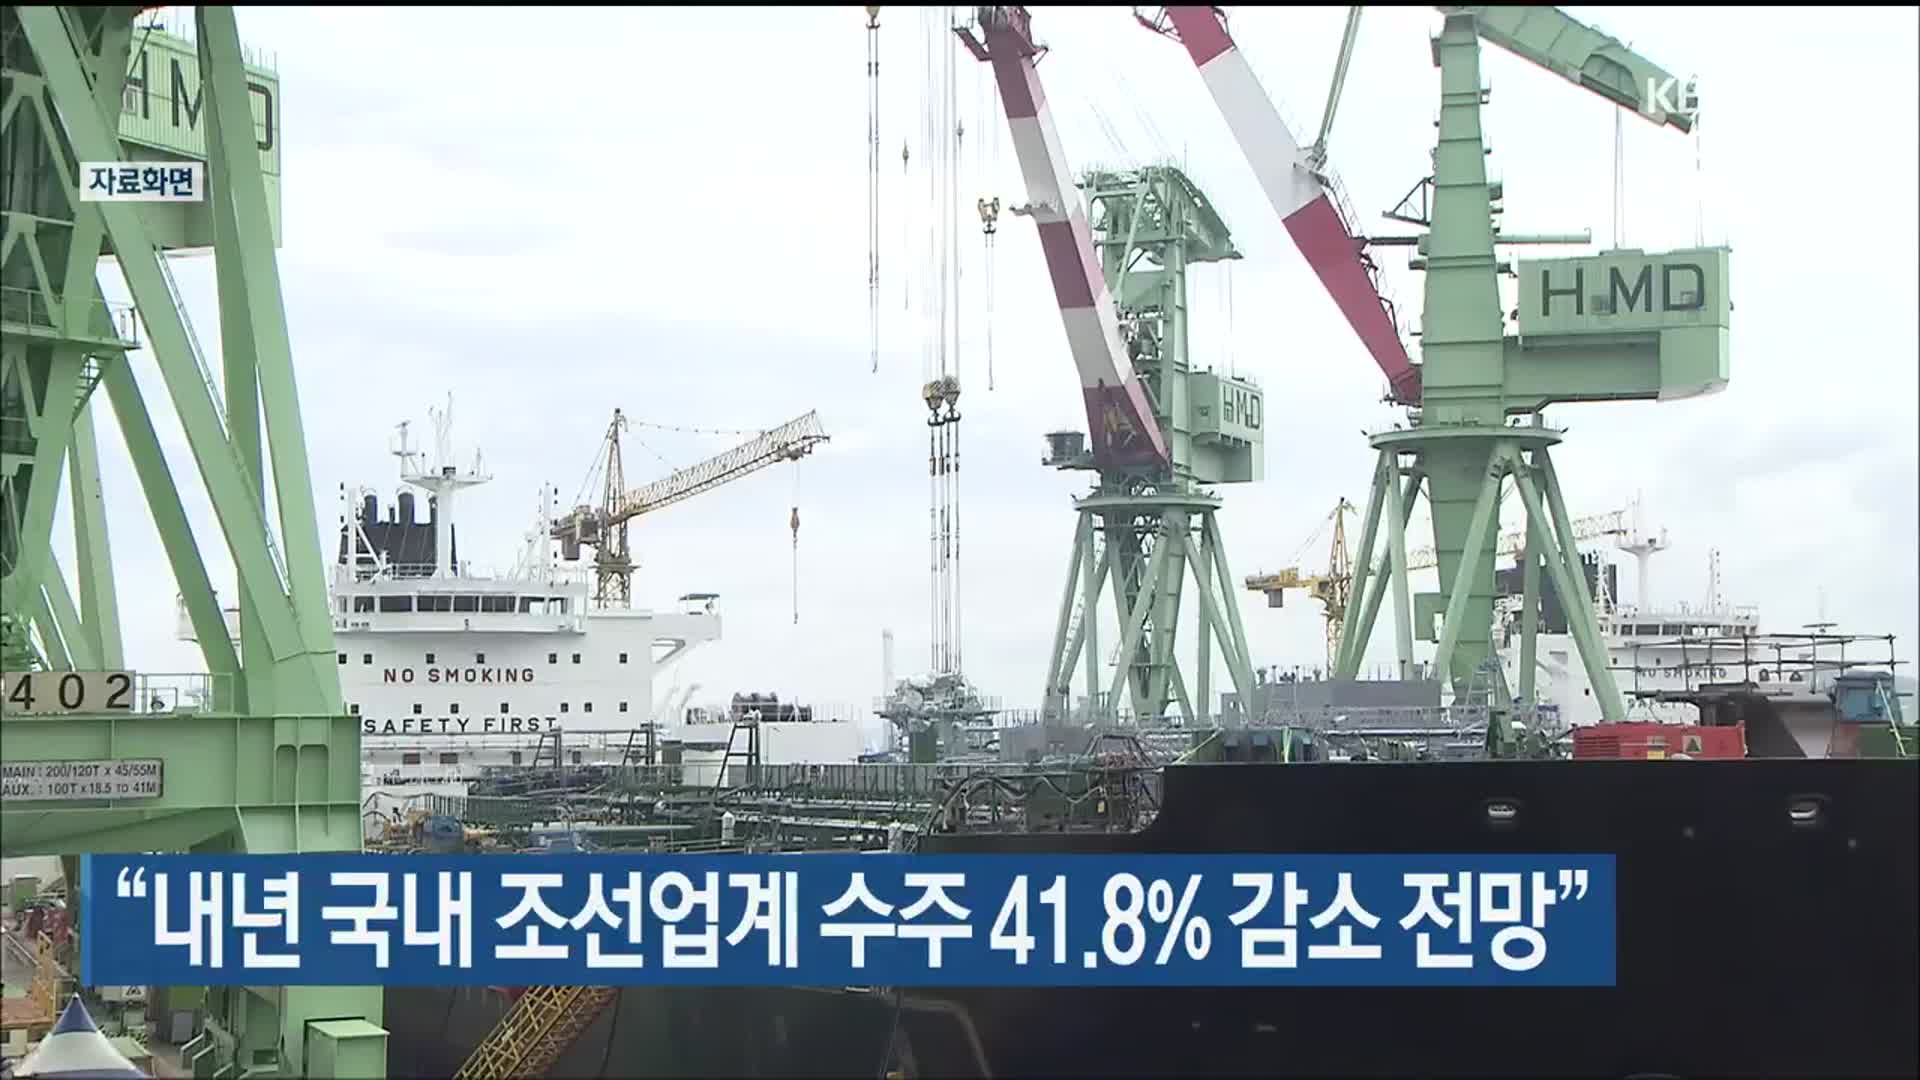 “내년 국내 조선업계 수주 41.8% 감소 전망”